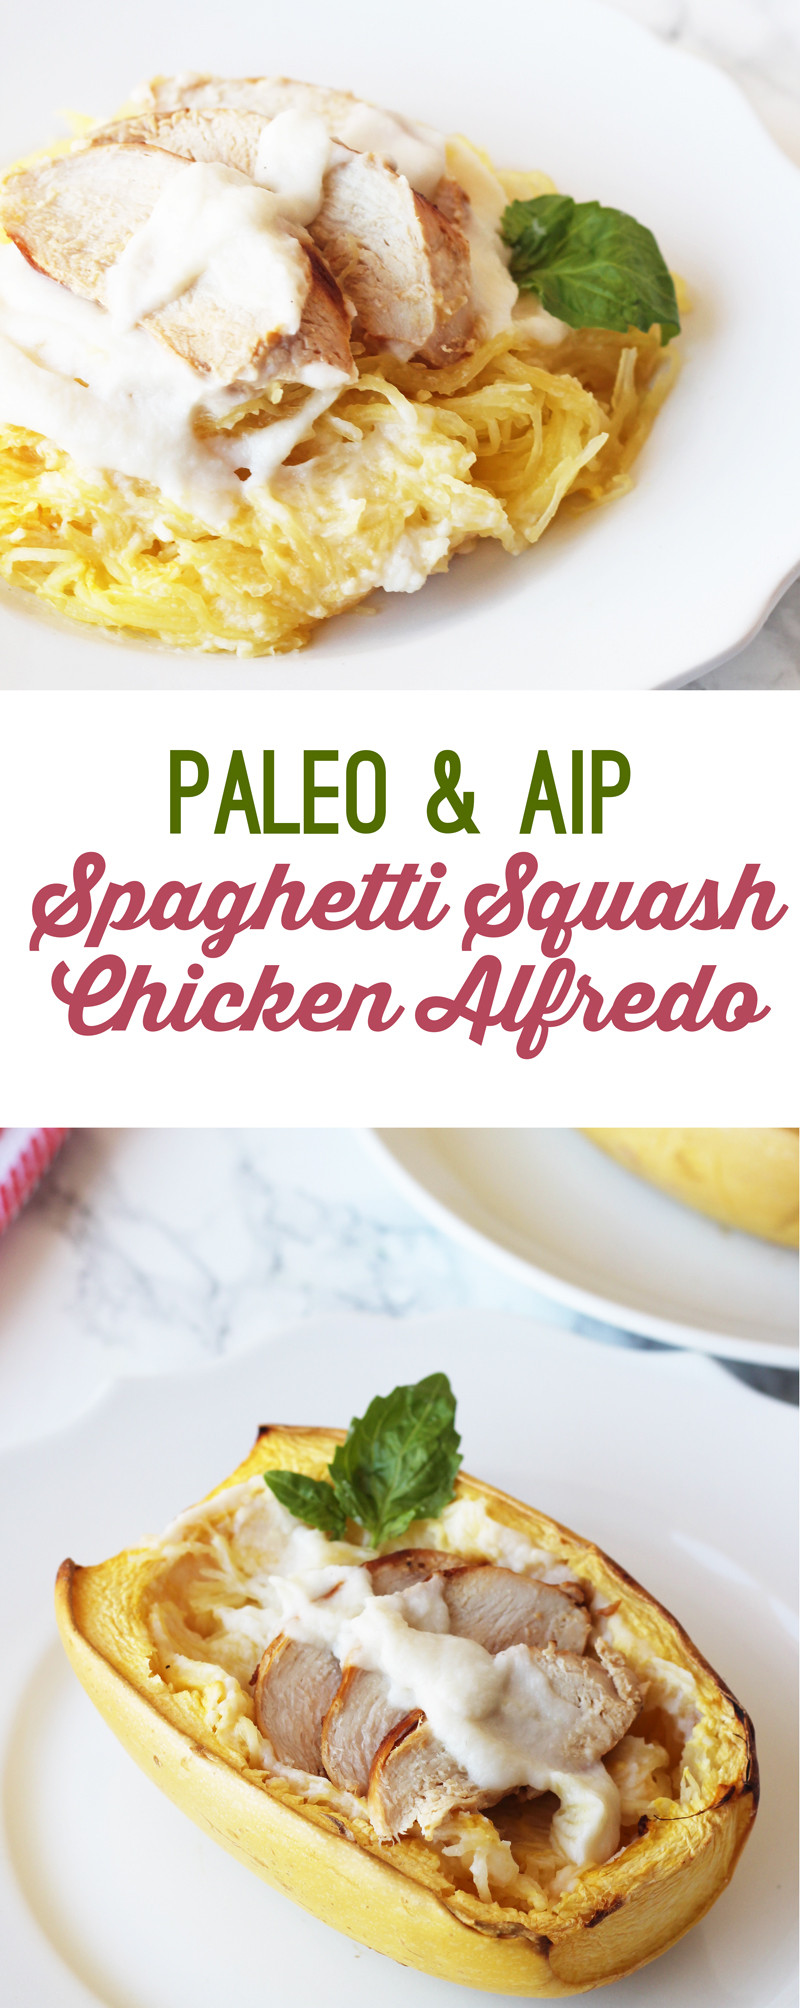 Spaghetti Squash And Chicken Recipes Paleo
 Paleo Spaghetti Squash Chicken Alfredo AIP & Dairy Free